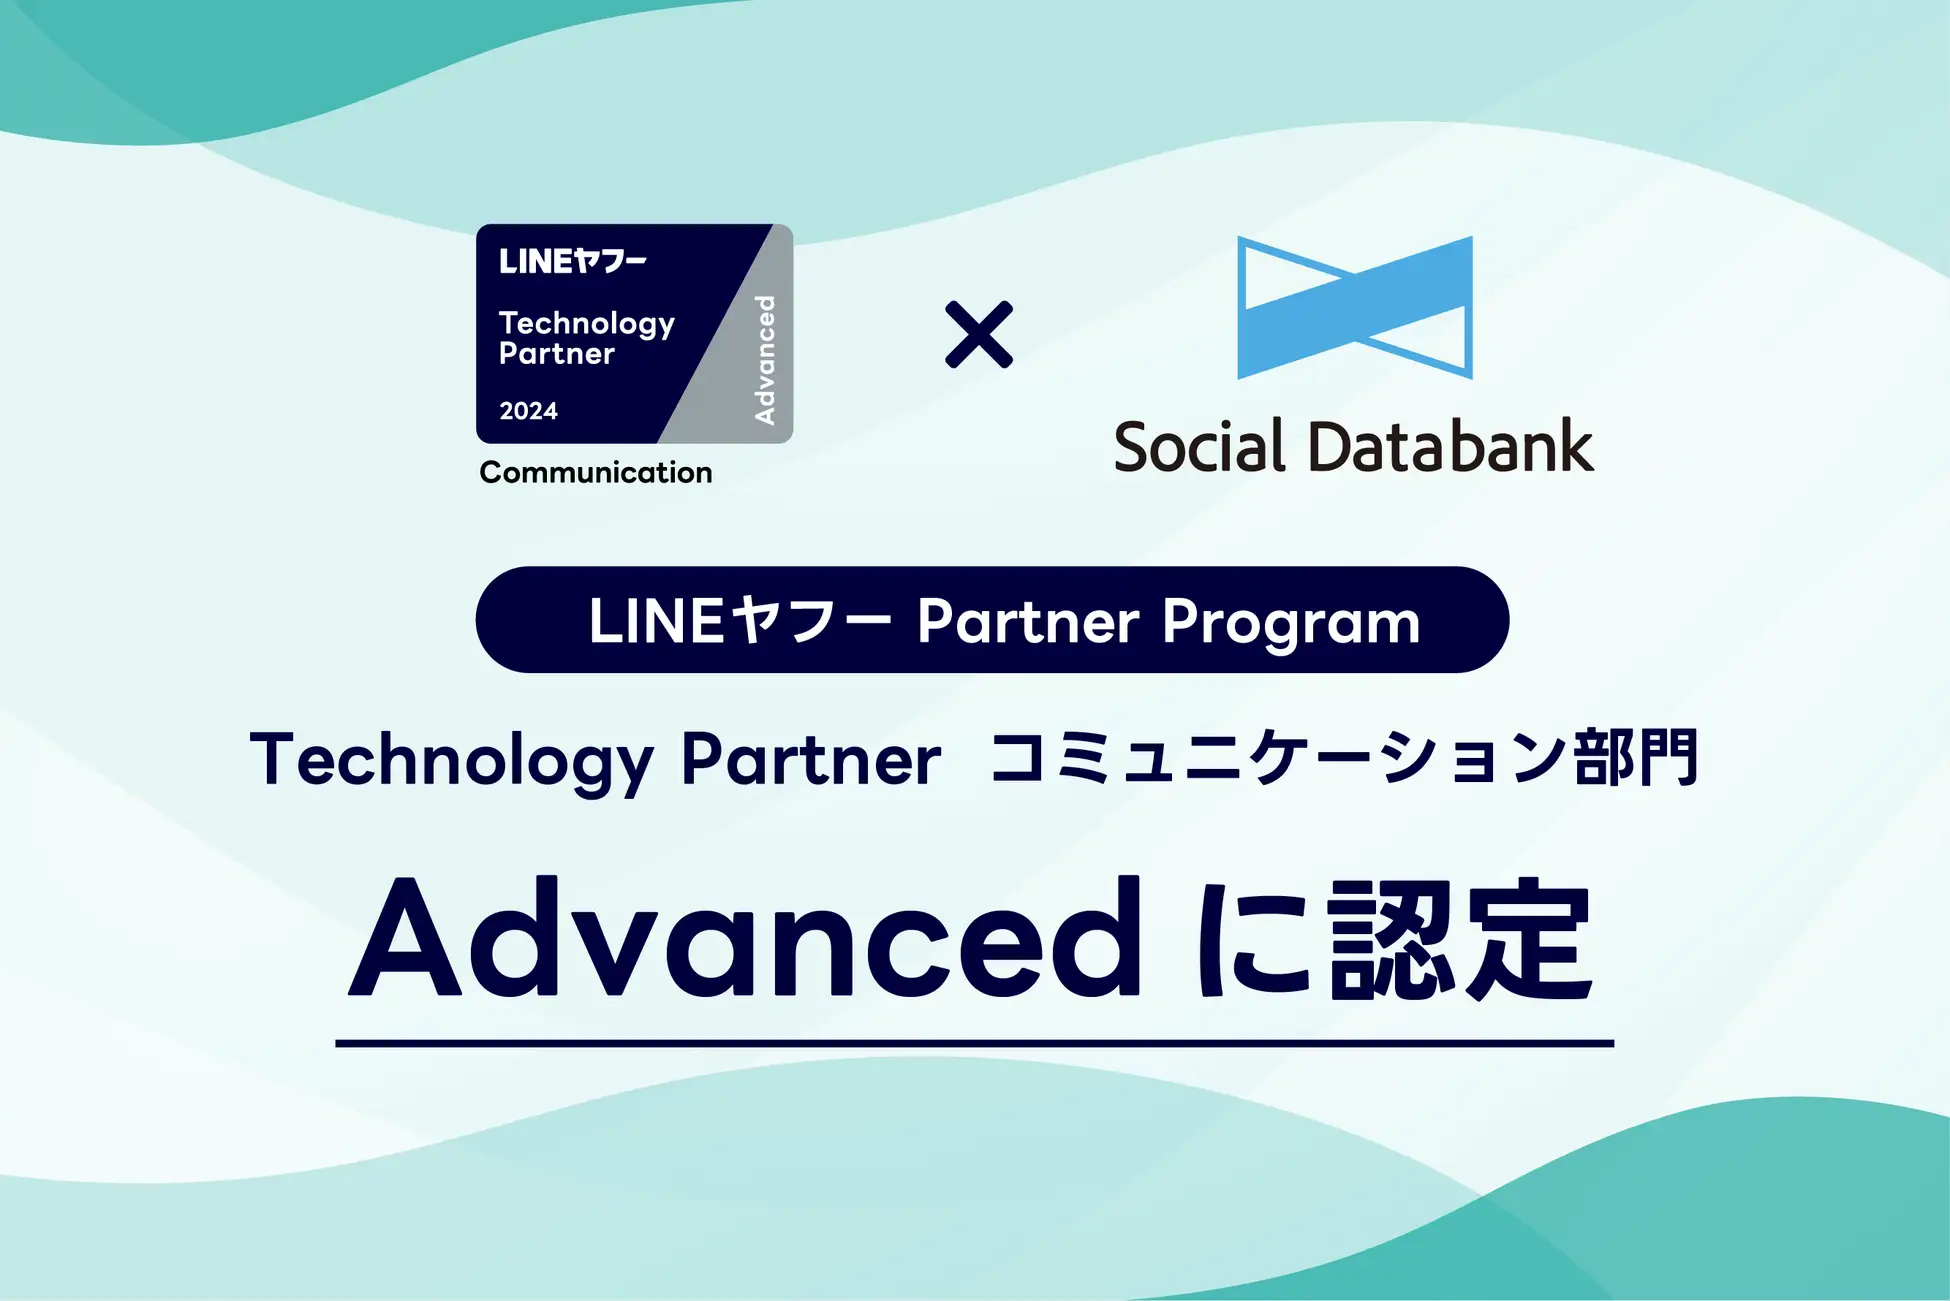 「Technology Partner」のコミュニケーション部門「Advanced」に認定